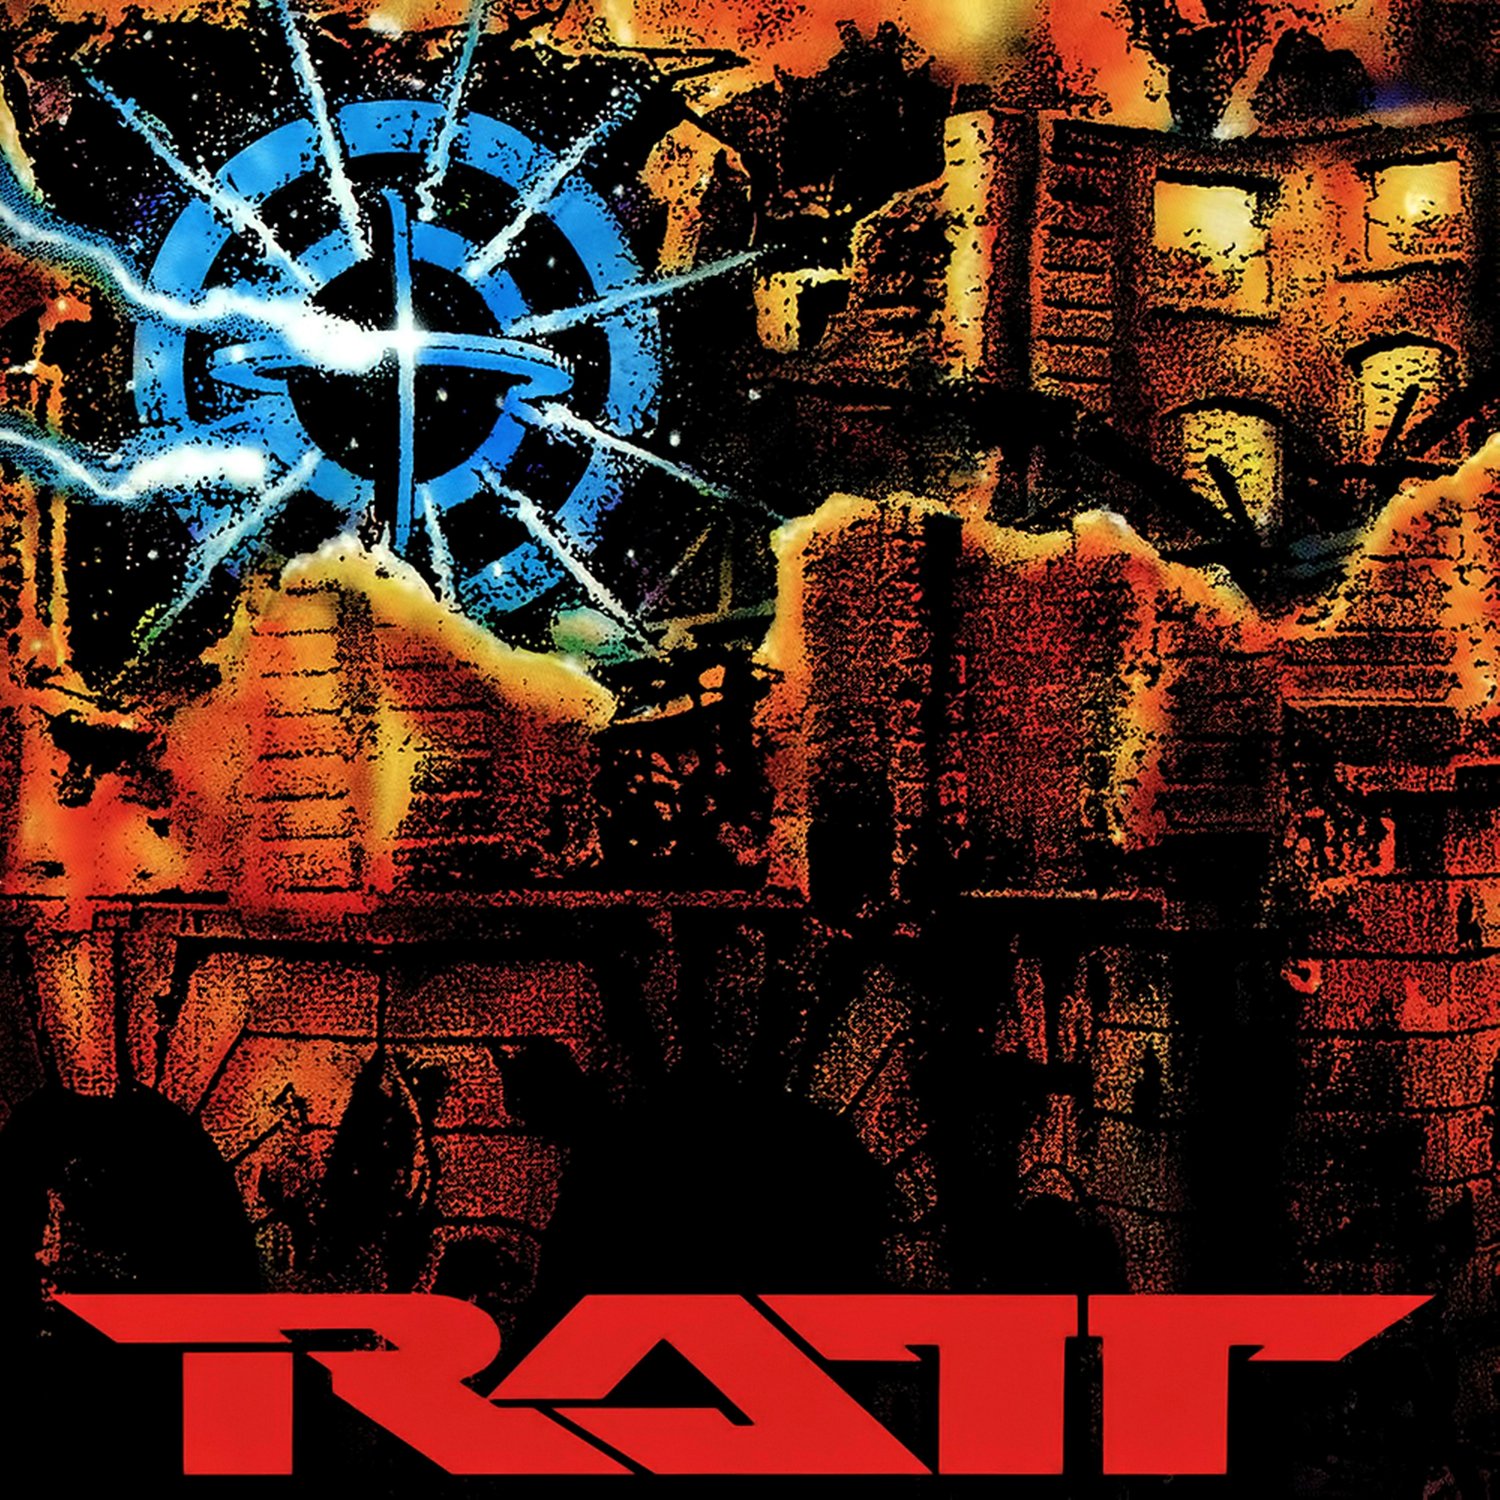 RATT Detonator BANNER Huge 4X4 Ft Fabric Poster Tapestry Flag Print album cover art